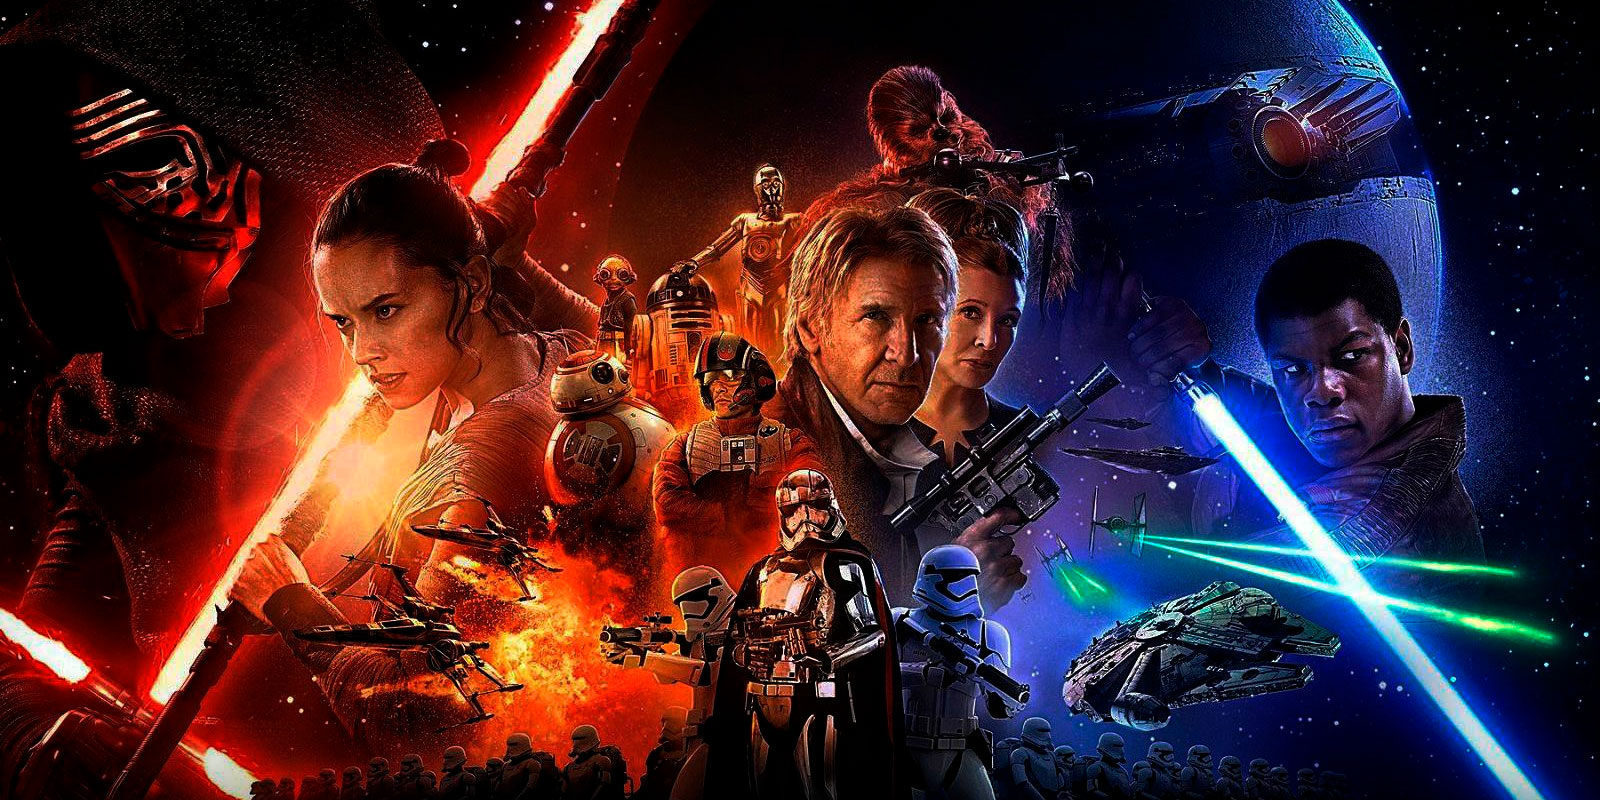 Arranca la campaña 'Star Wars: Force for change' con importantes recompensas